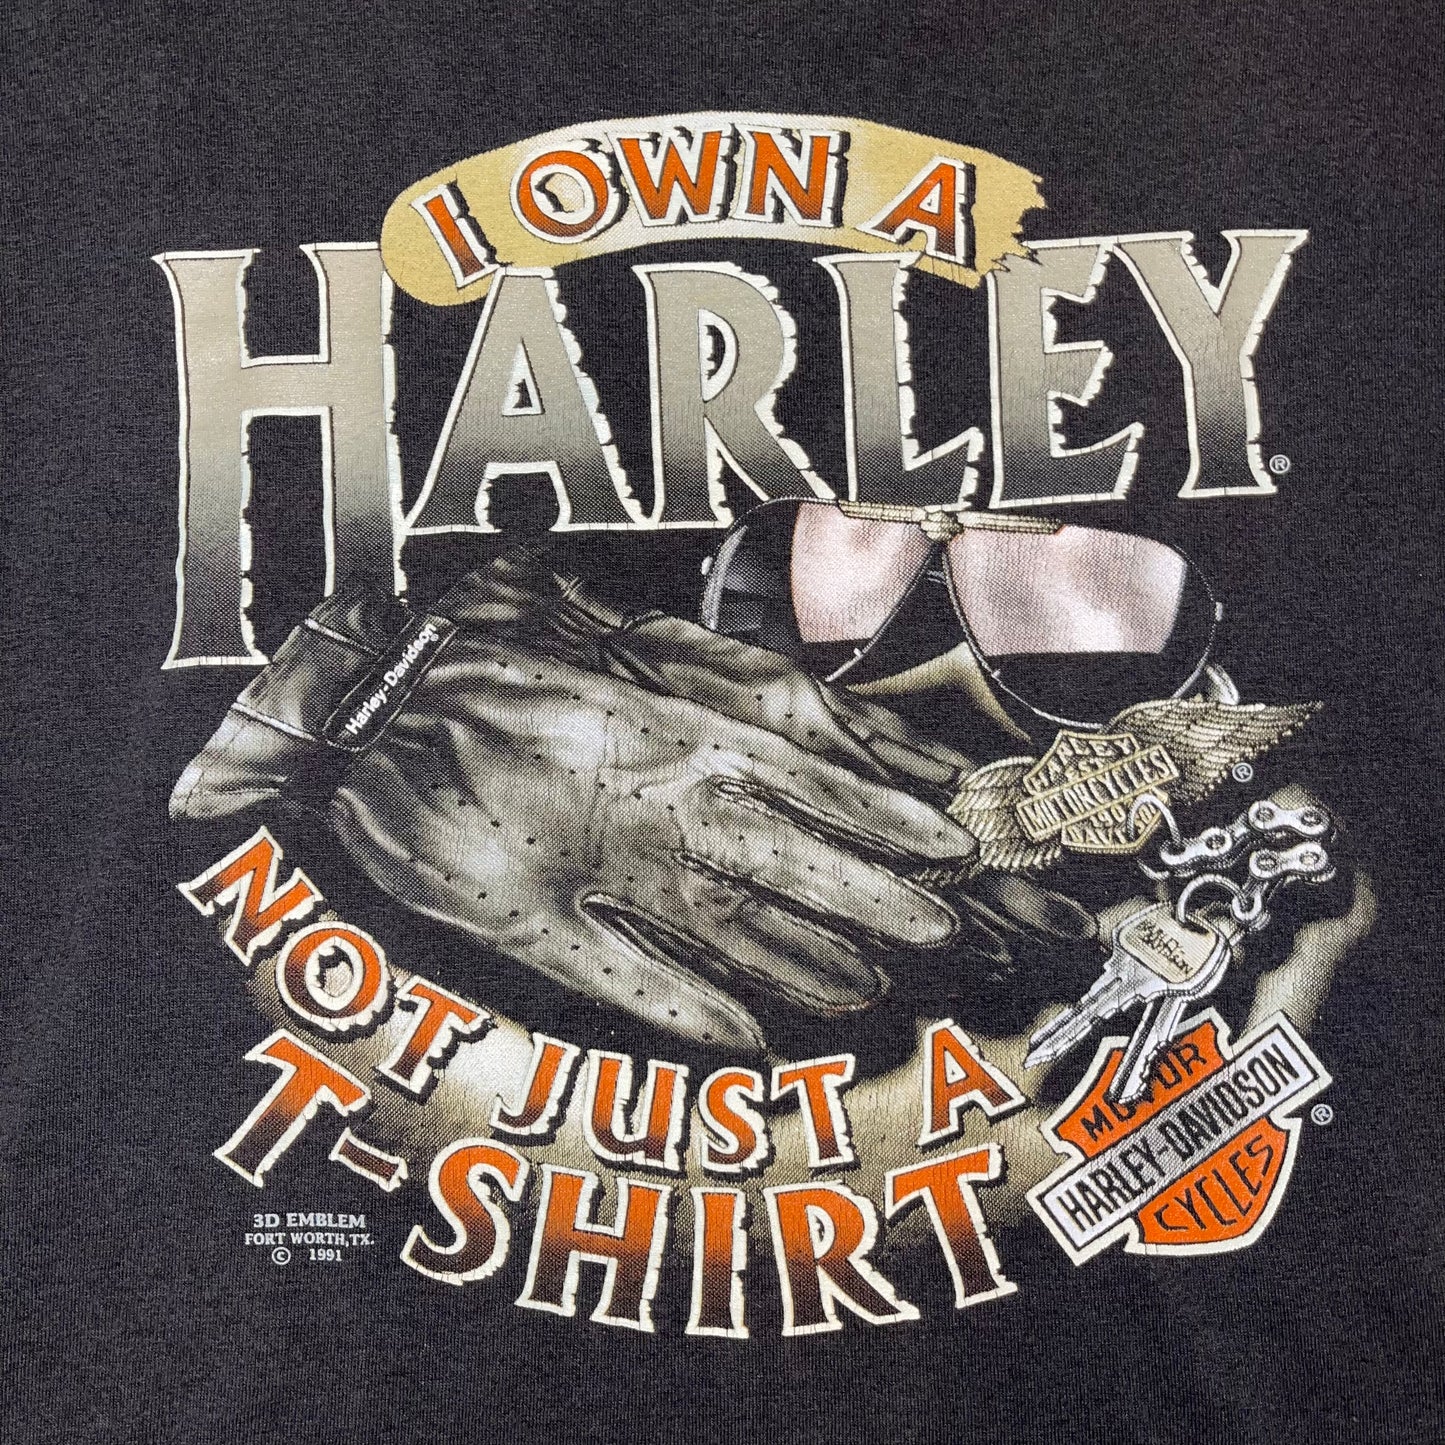 Vintage 1991 3D Emblem Harley Davidson Made in the USA T-shirt. Sz L